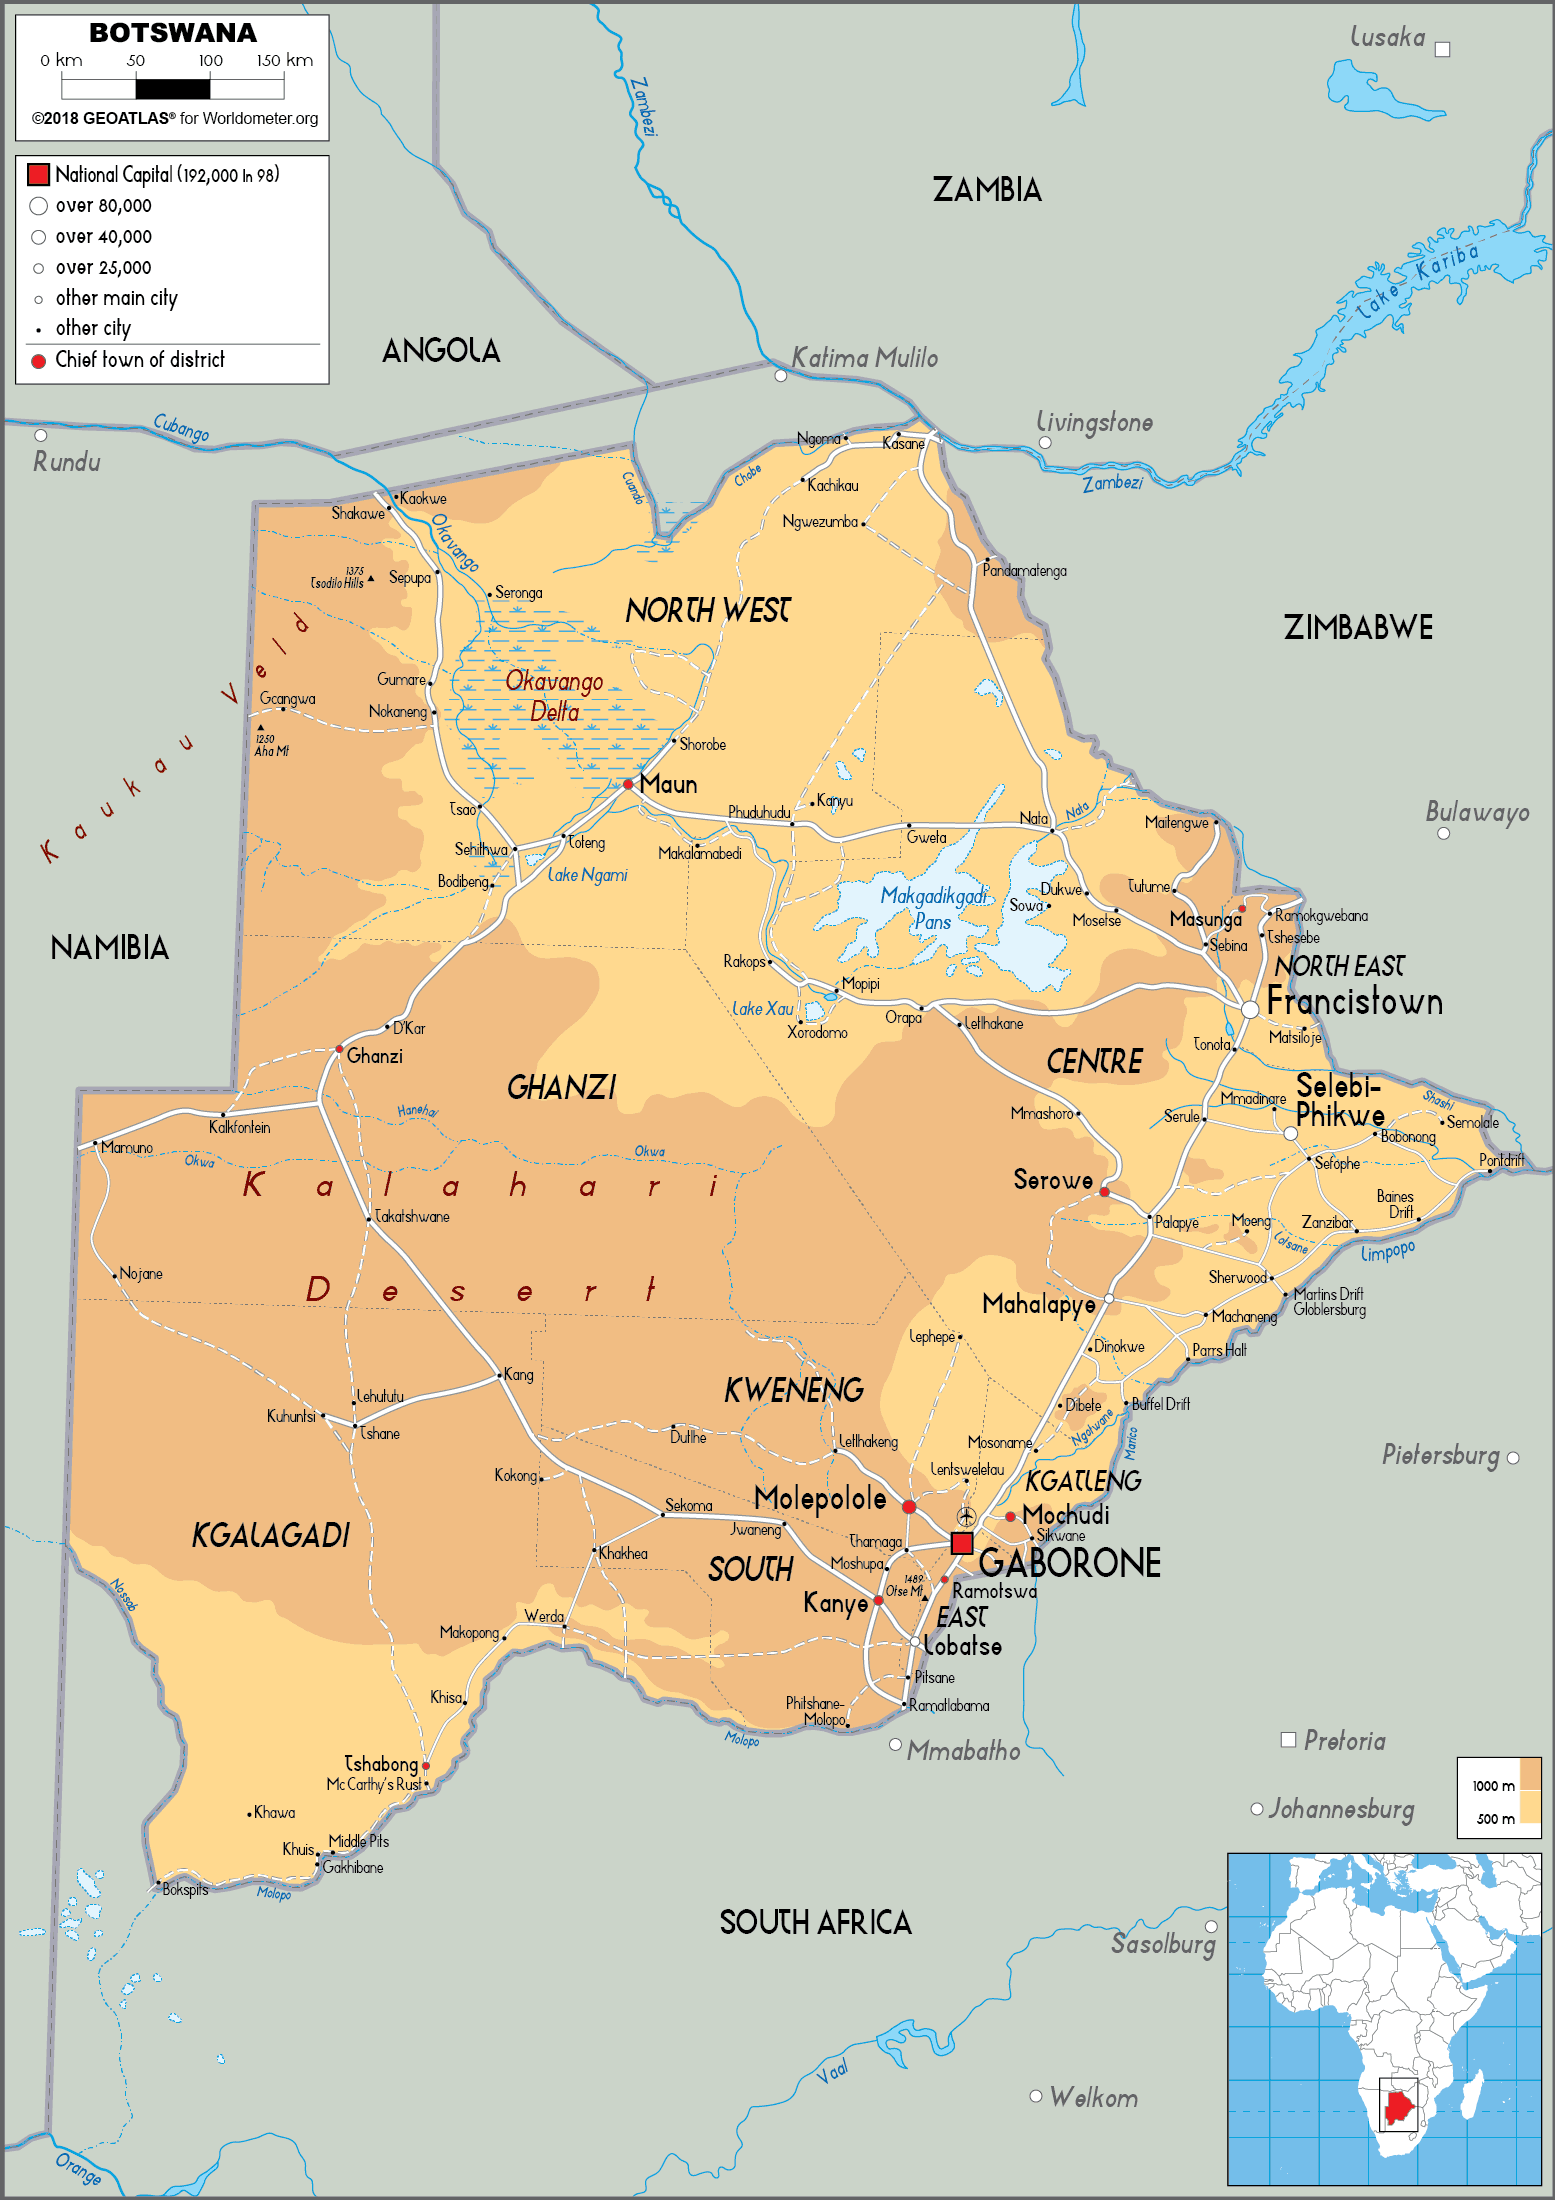 [Update] Bản đồ hành chính đất nước Botswana (Botswana Map) phóng to năm 2022 20